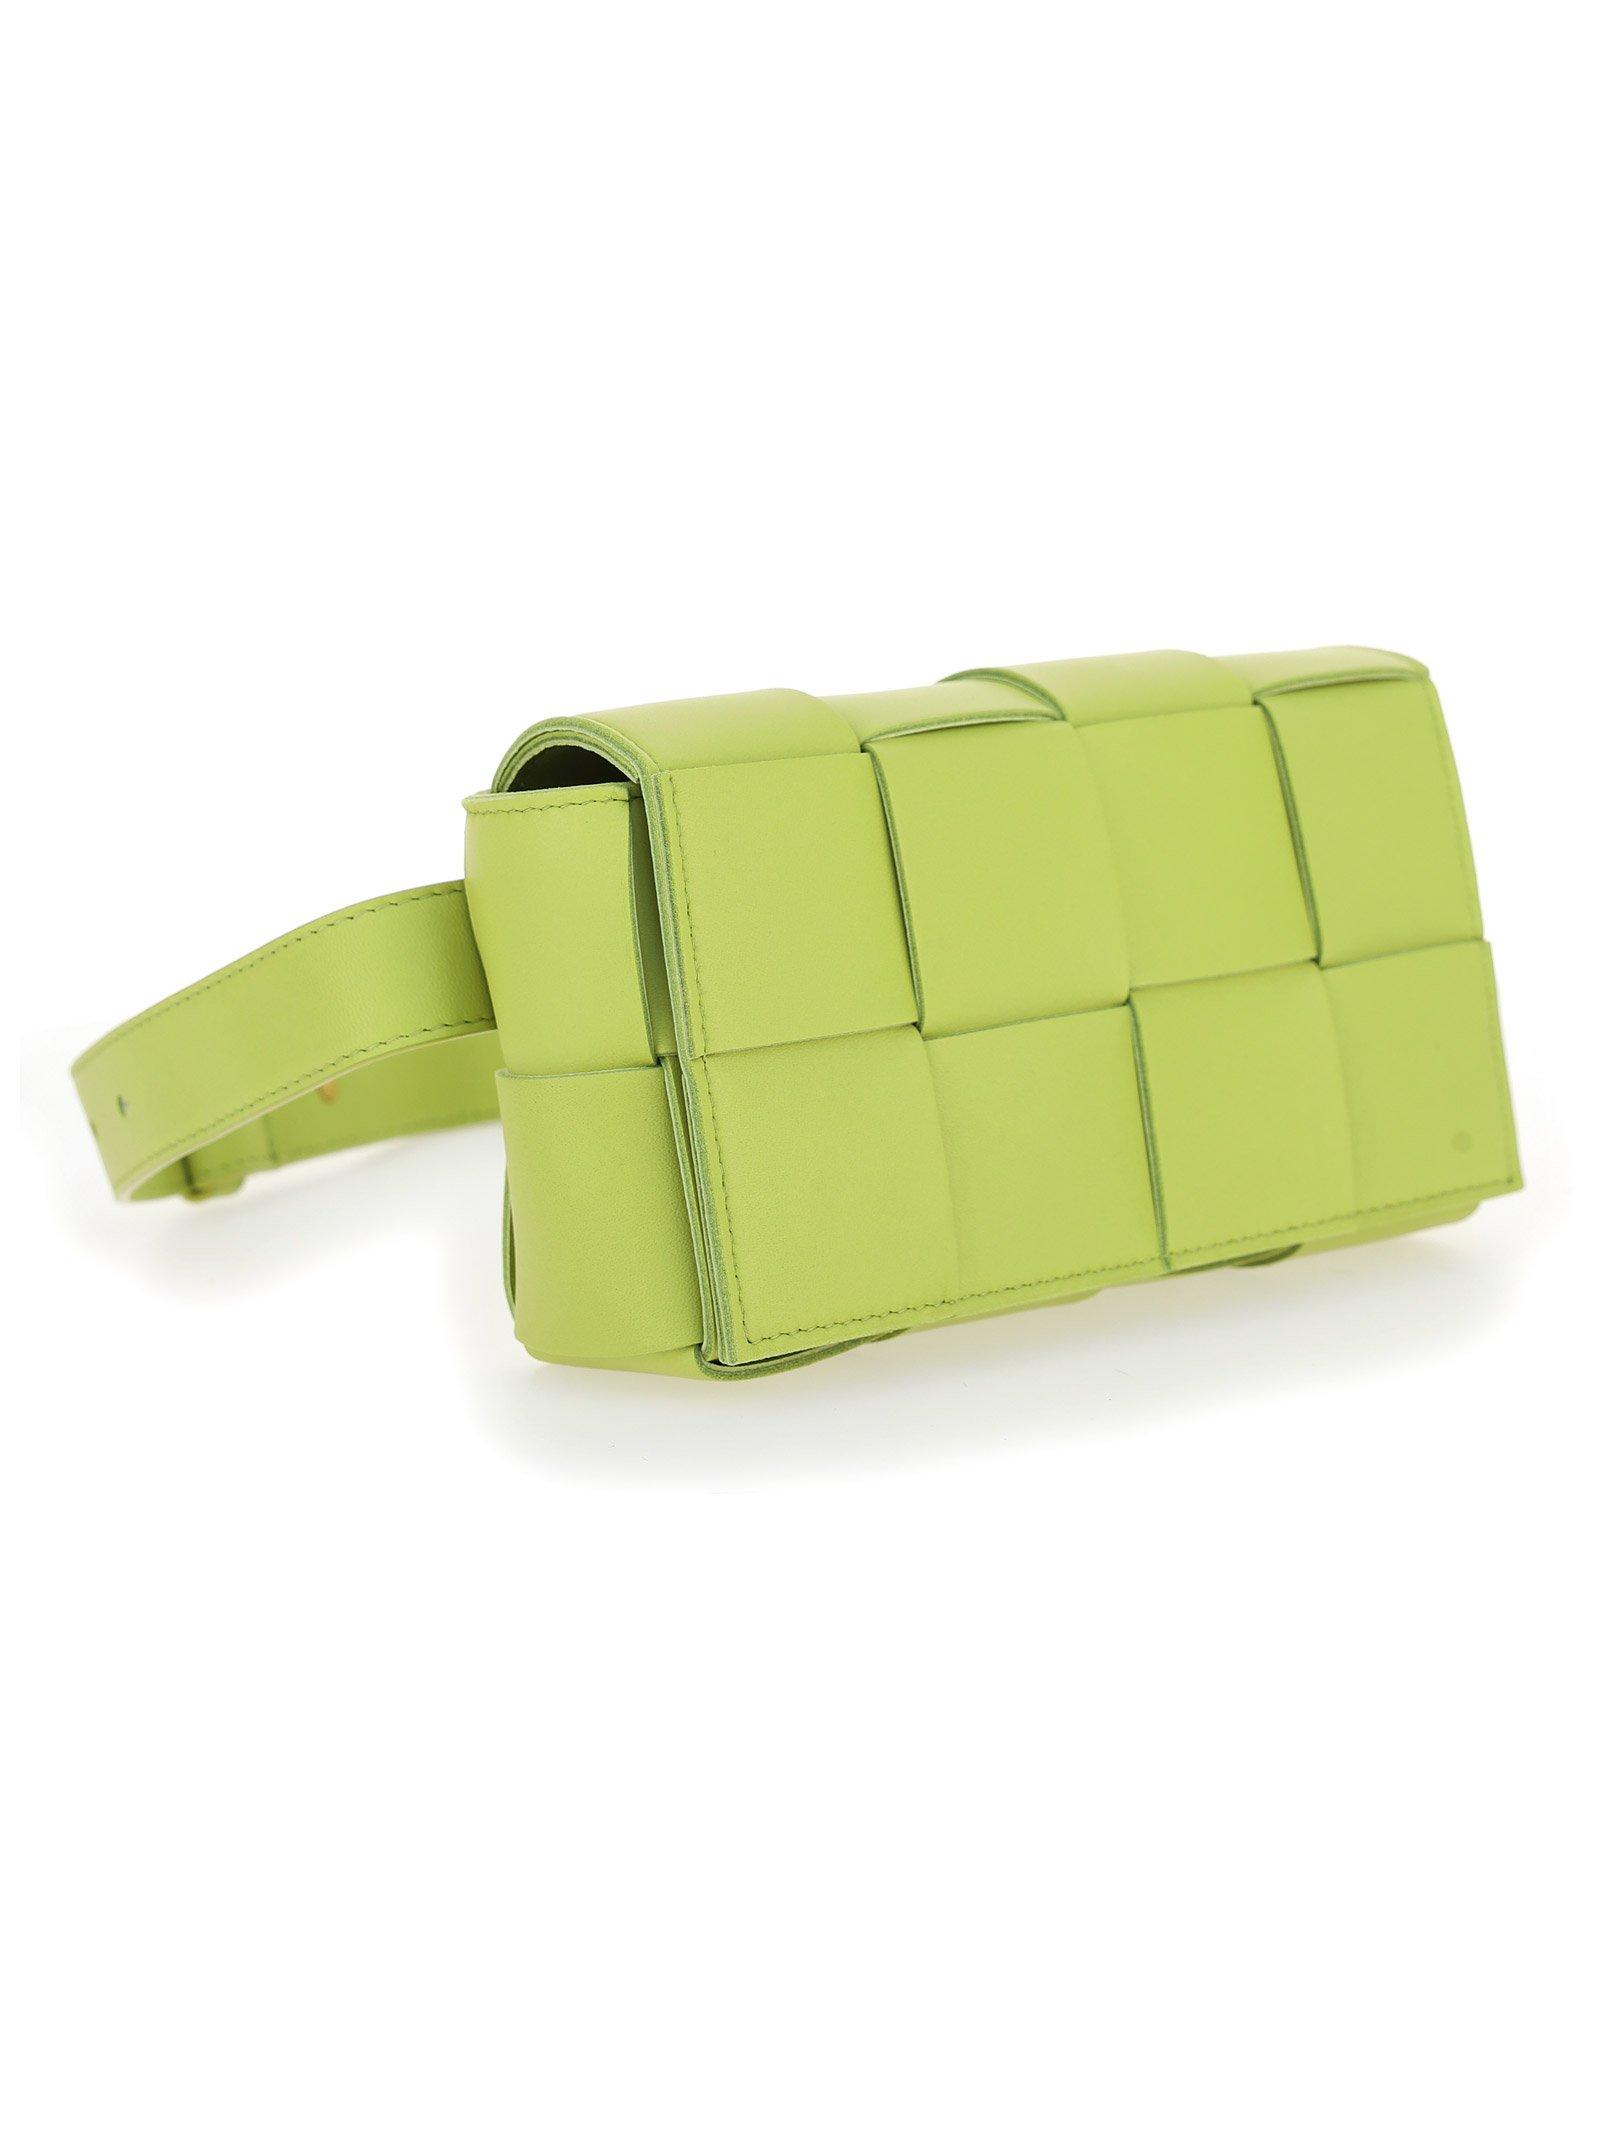 Bottega Veneta Leather The Belt Cassette Bag in Green - Lyst